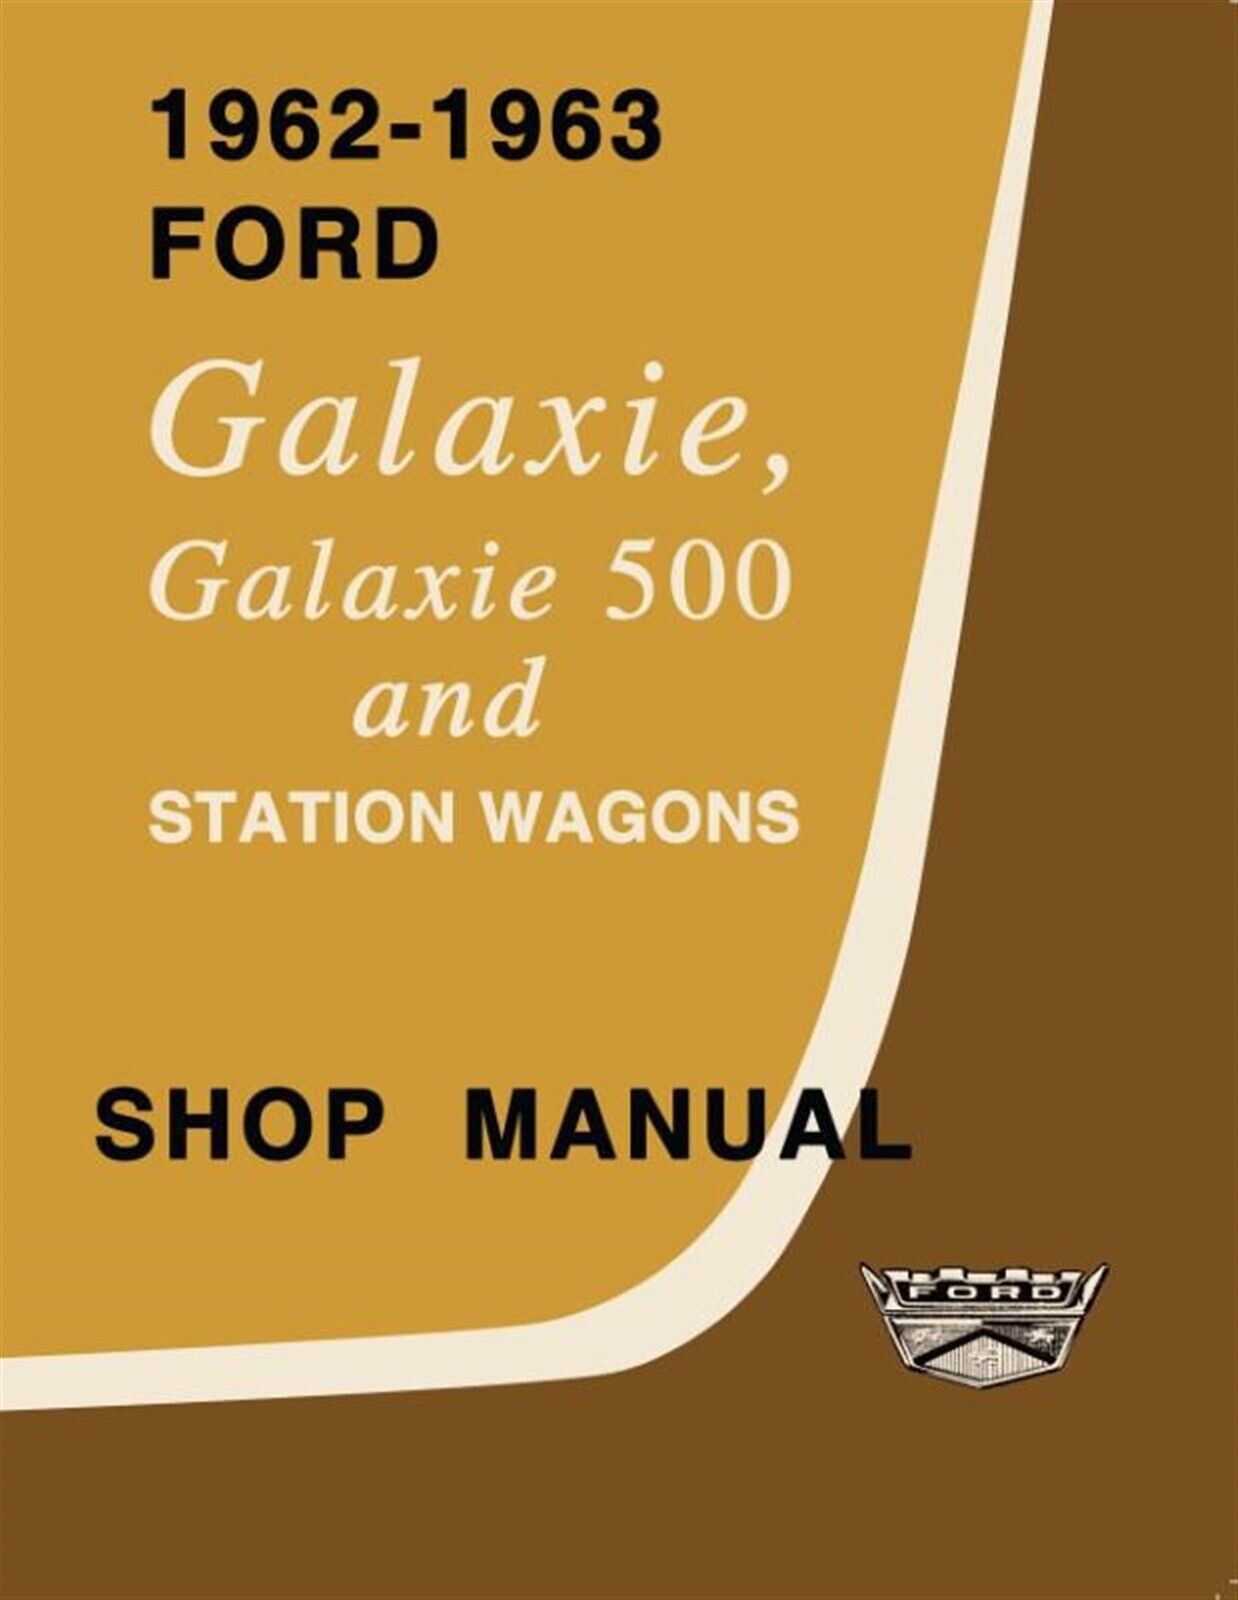 1962-1963 Ford Galaxie Shop Manual